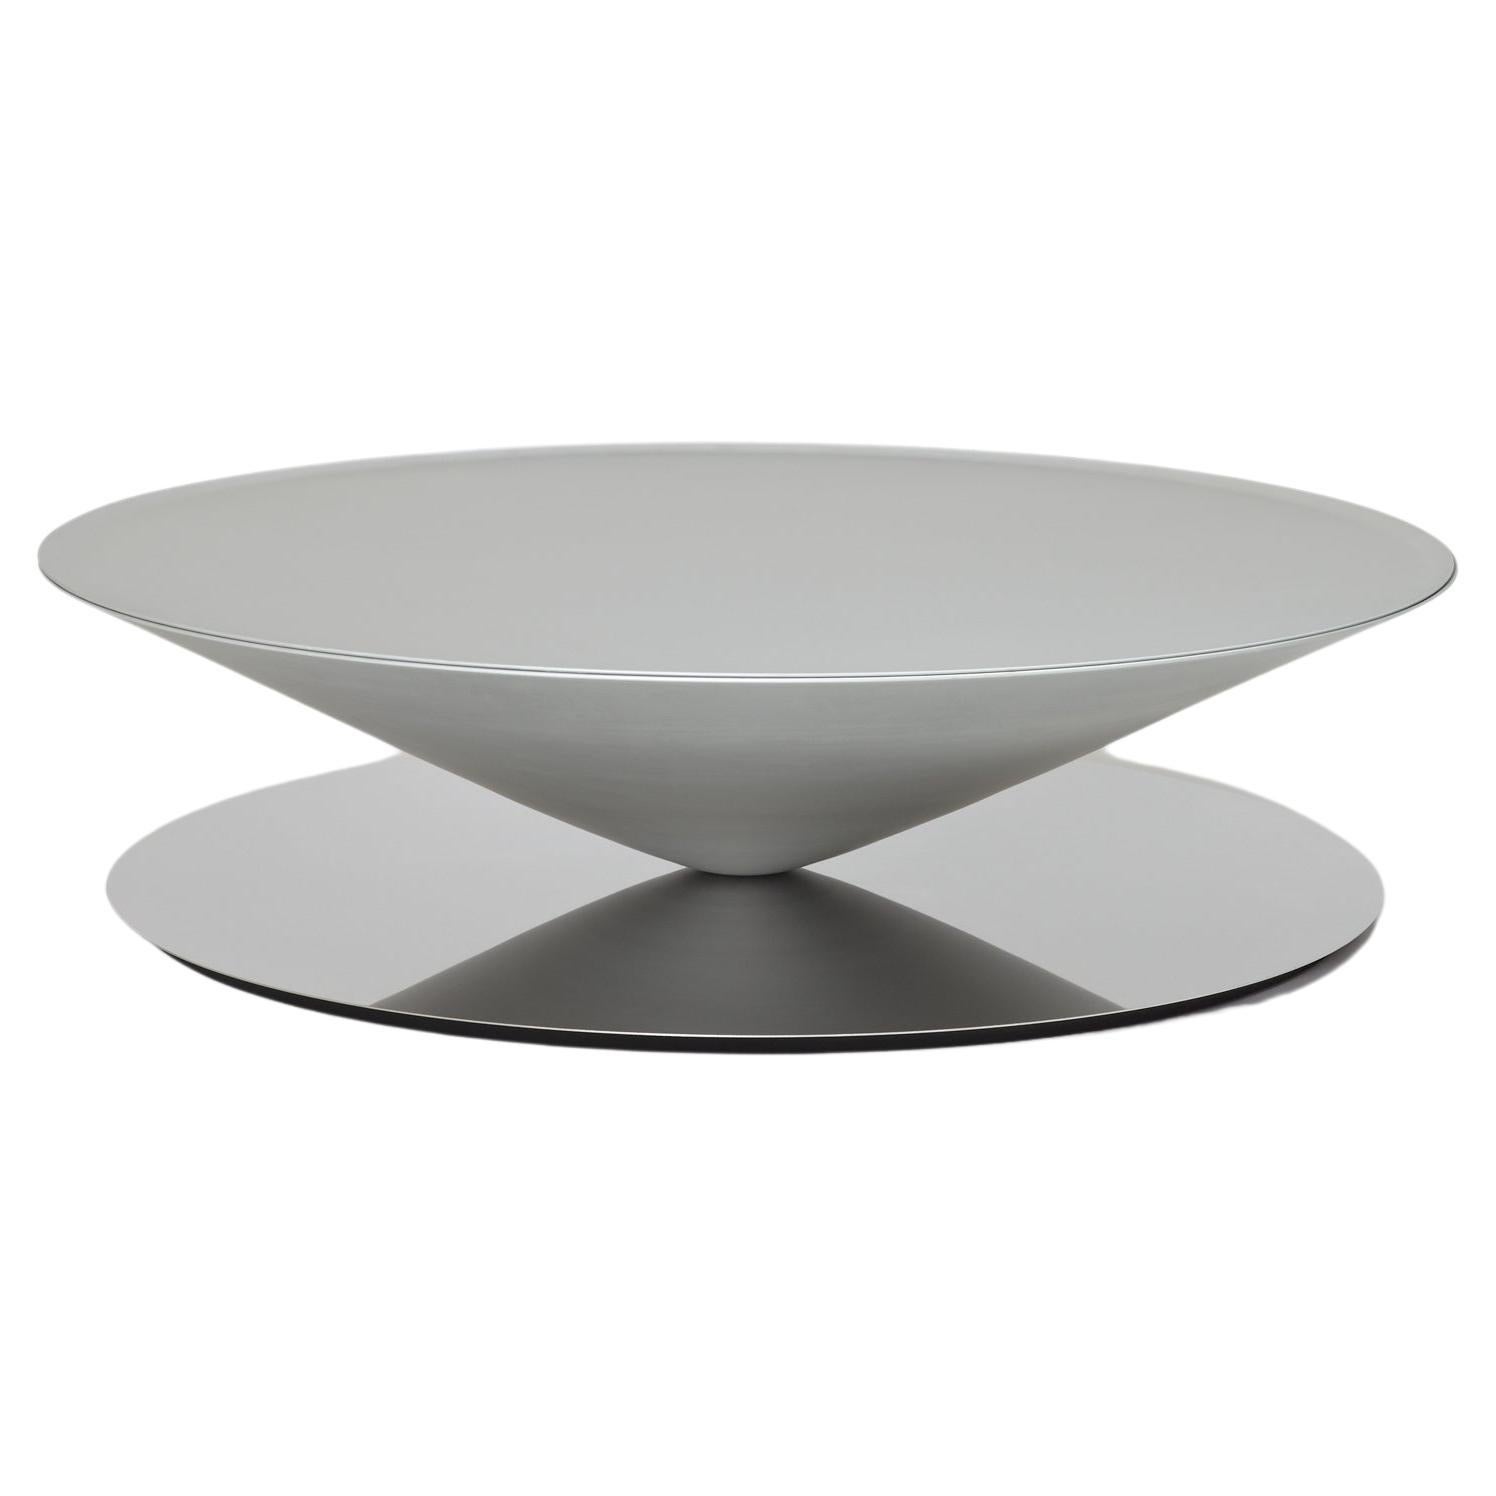 Table basse flottante grise Mat de Luca Nichetto pour La Chance